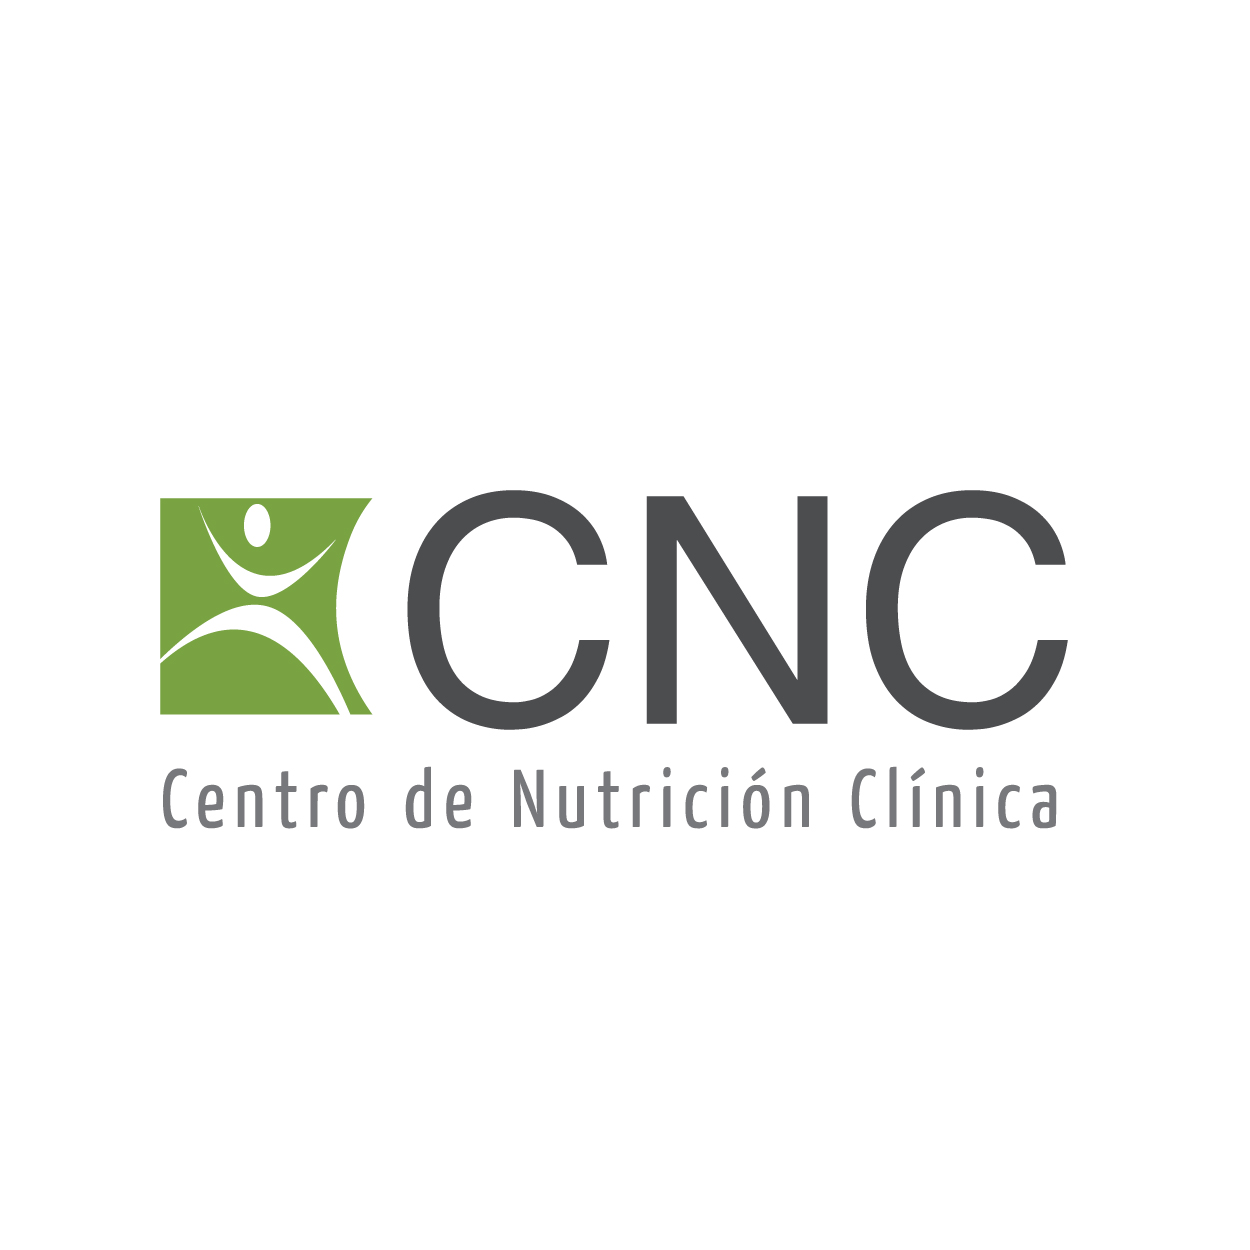 Centro de Nutrición Clínica